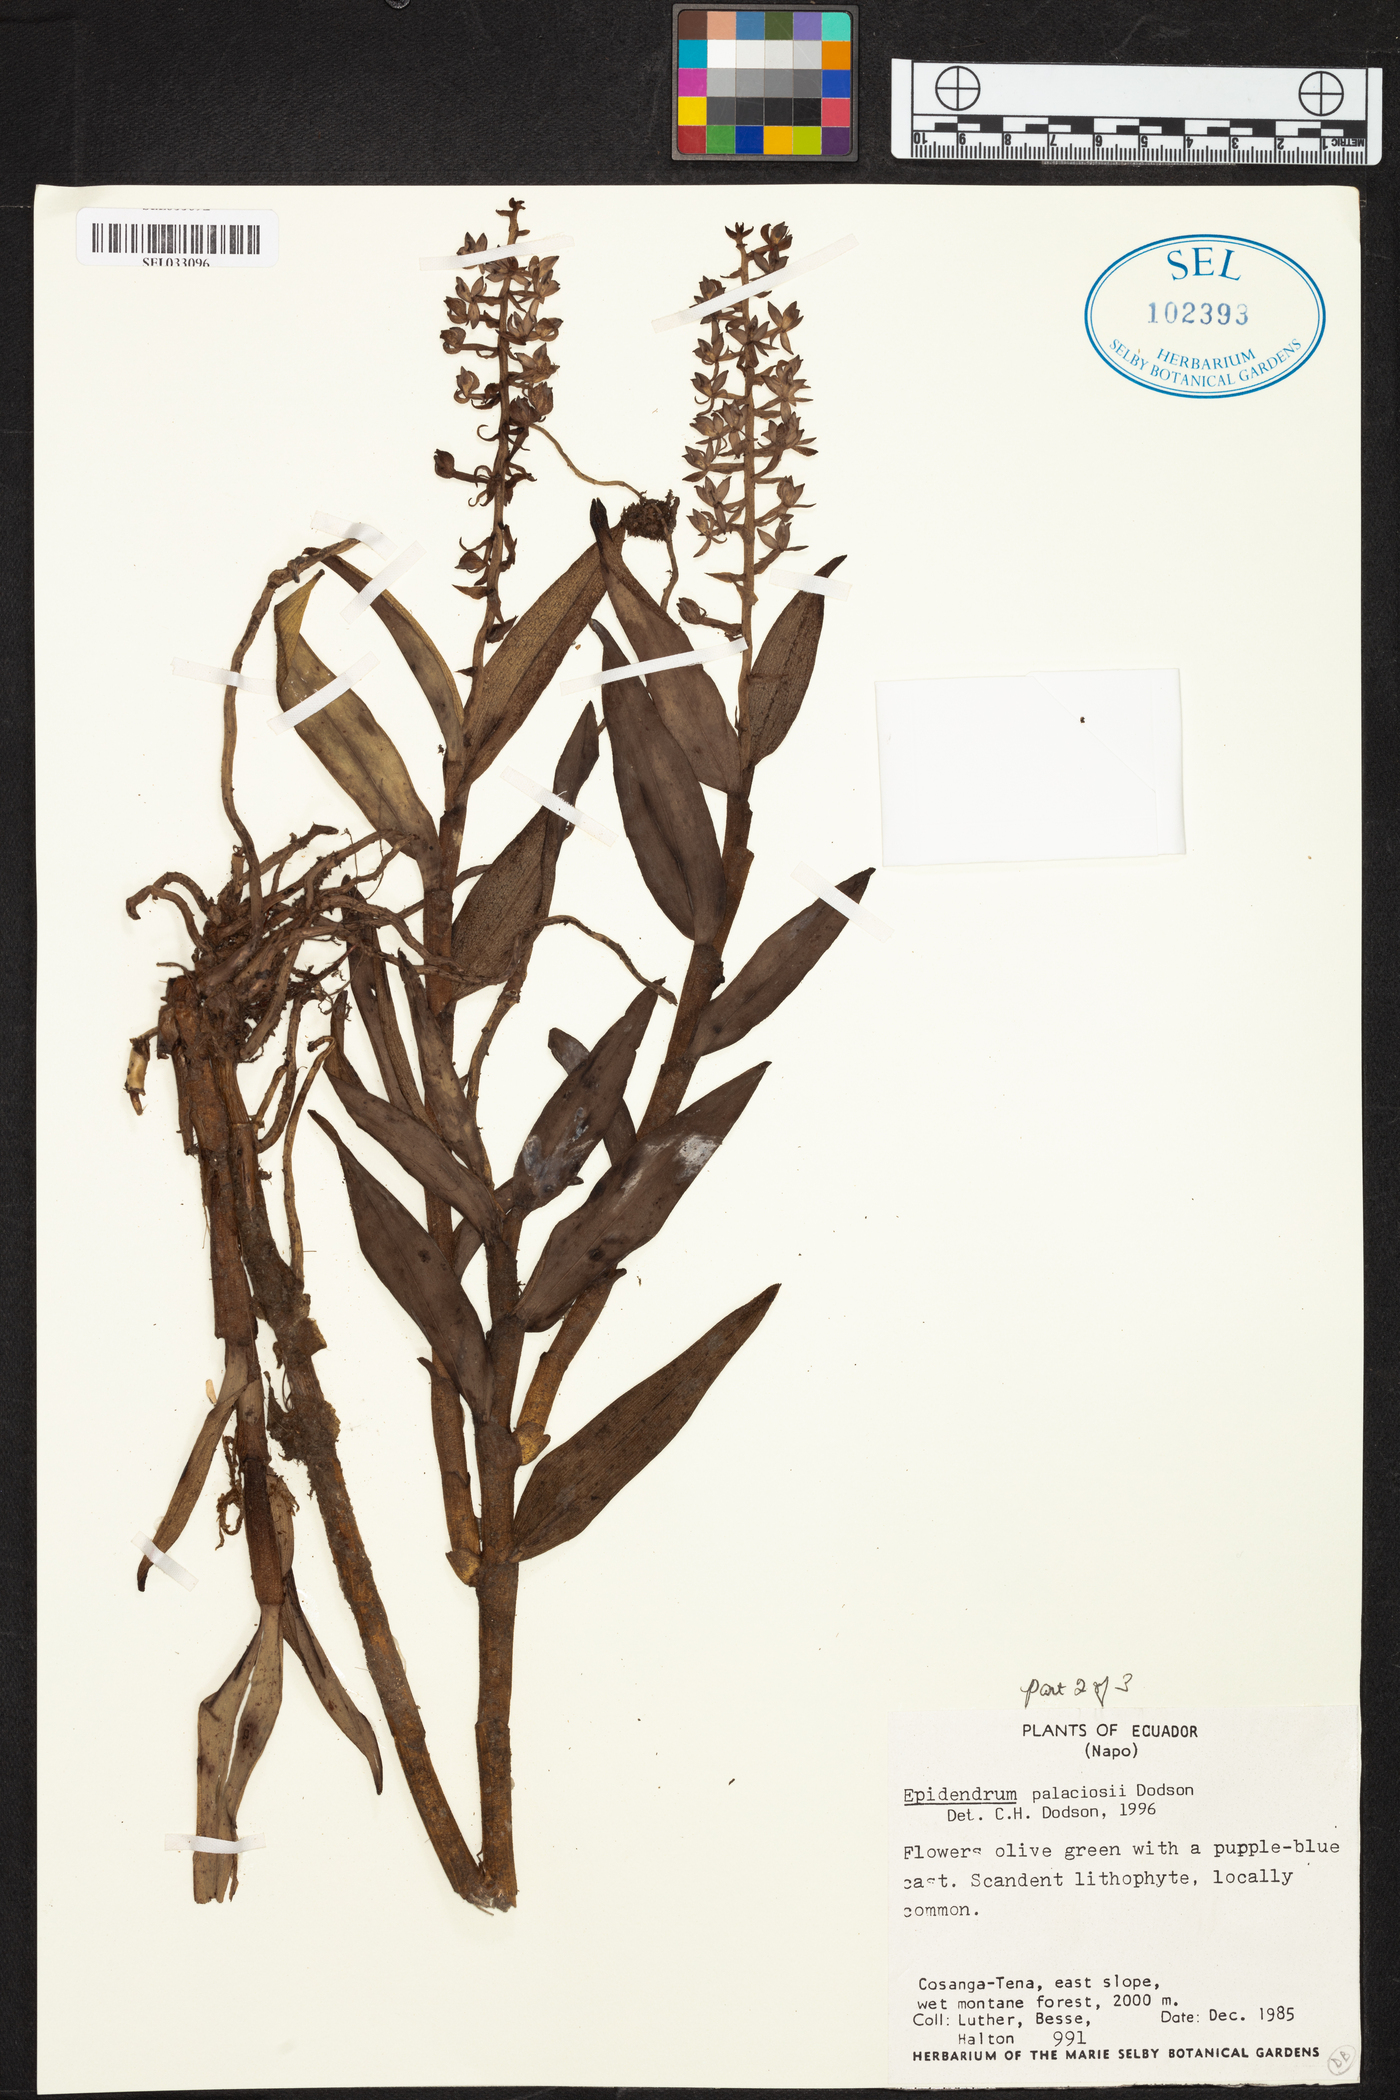 Epidendrum palaciosii image